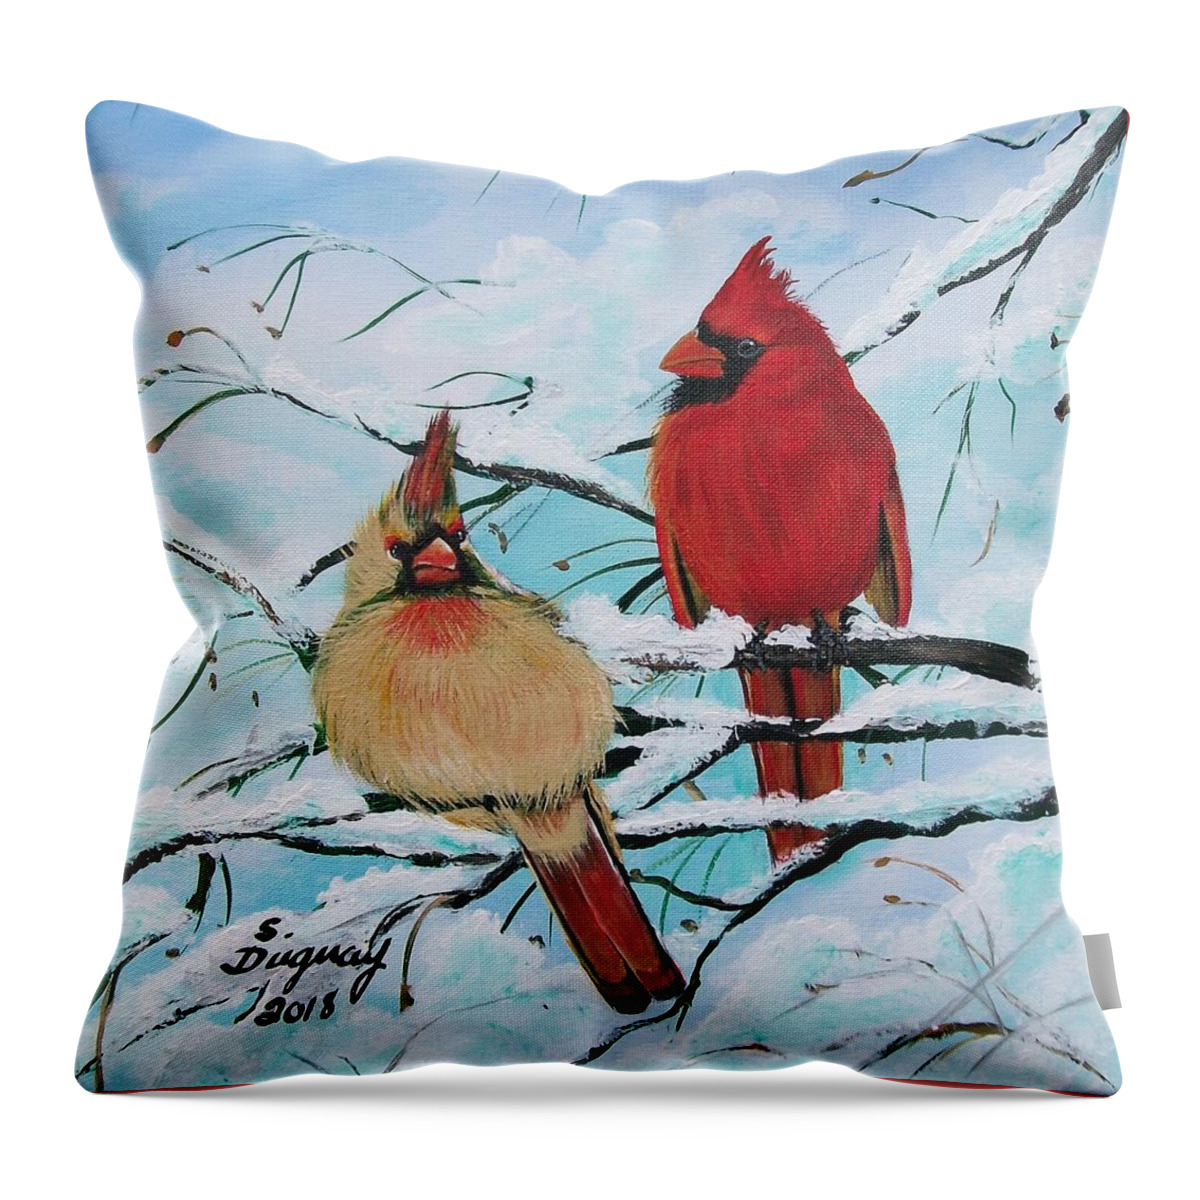 Cardinalis Throw Pillow featuring the painting Cardinalis by Sharon Duguay